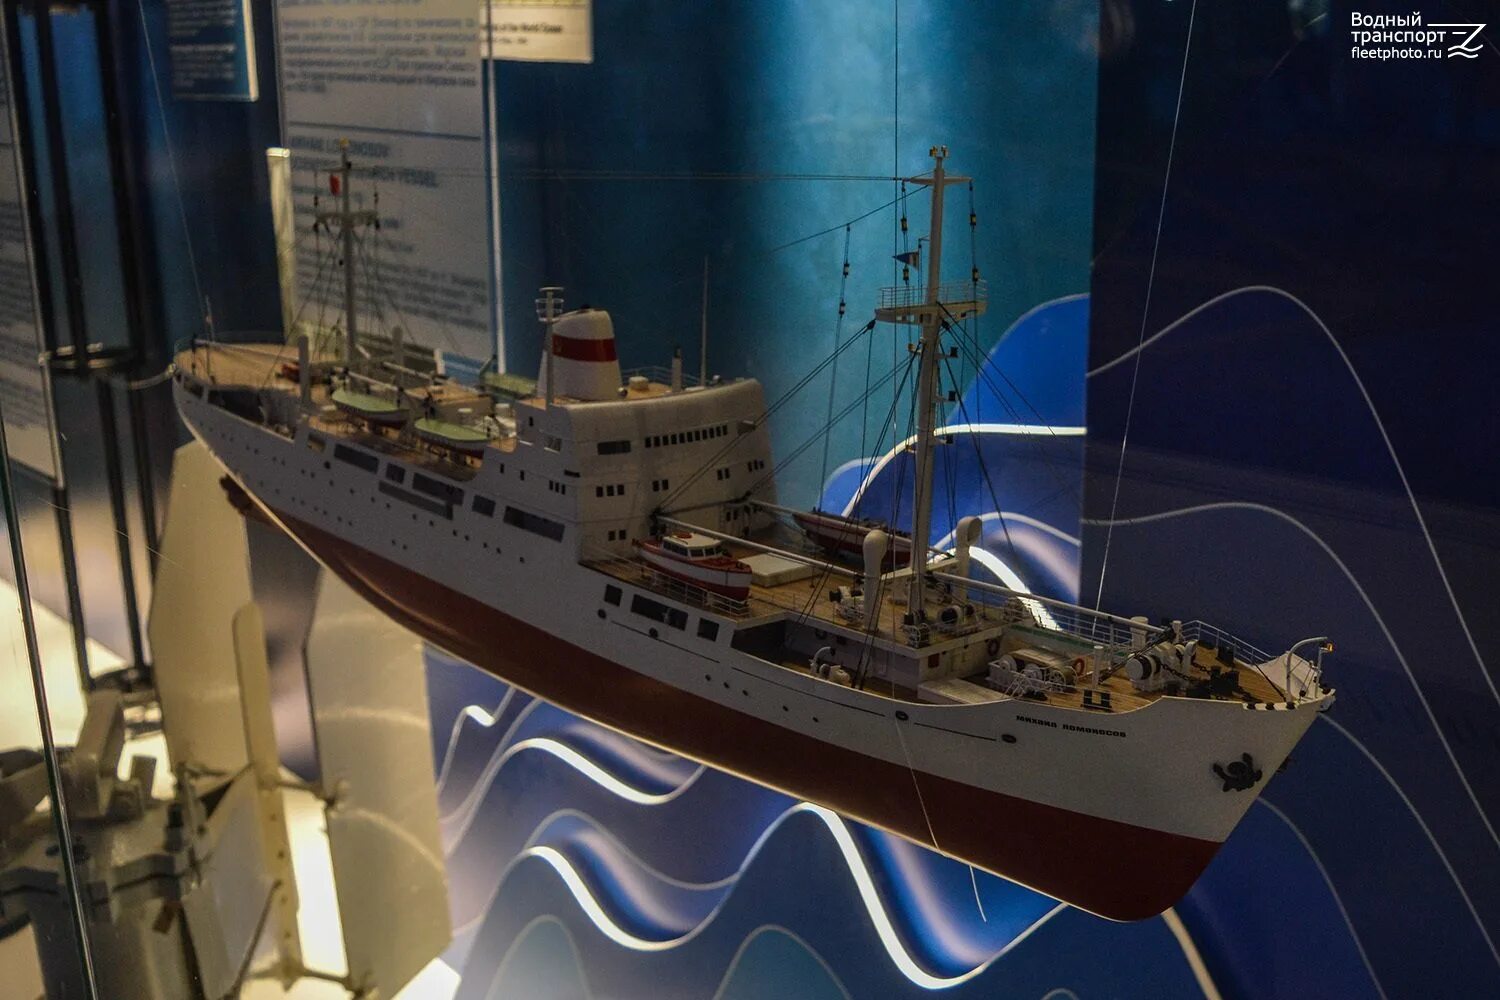 Как прозвали односельчане судно ломоносова. НИС Ломоносов корабль. Модели гражданских судов. Модель гражданского судна.